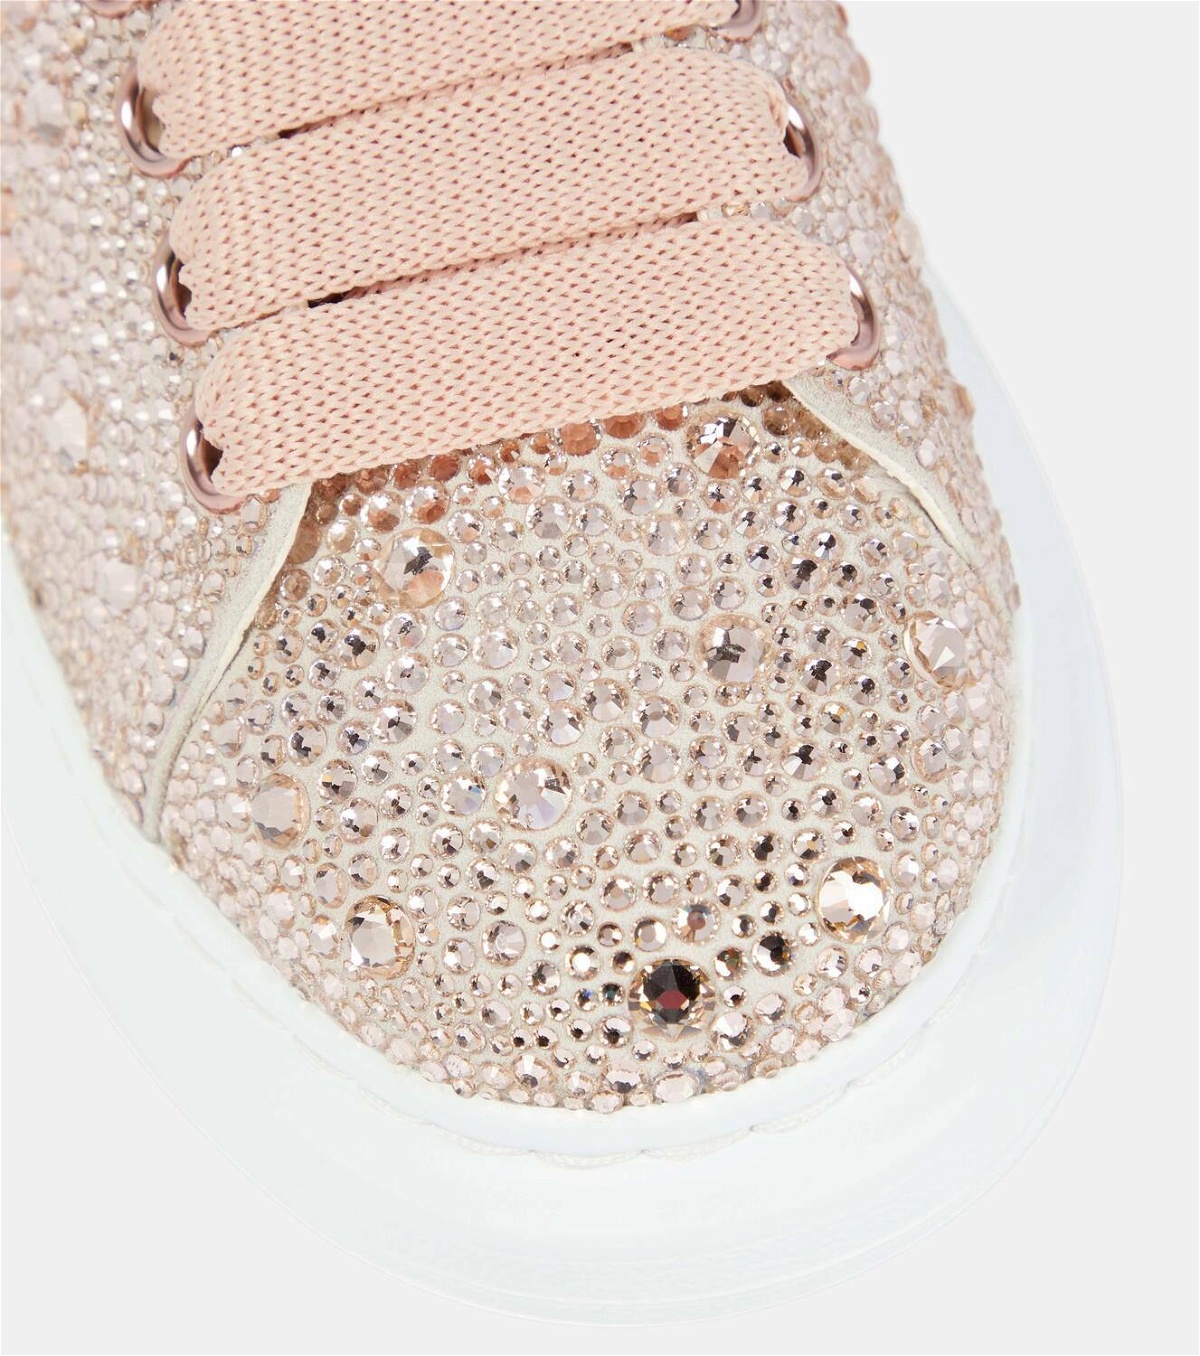 Alexander McQueen sneakers with a crystal-embellished heel counter. # AlexanderMcQueen #Aishti | Instagram